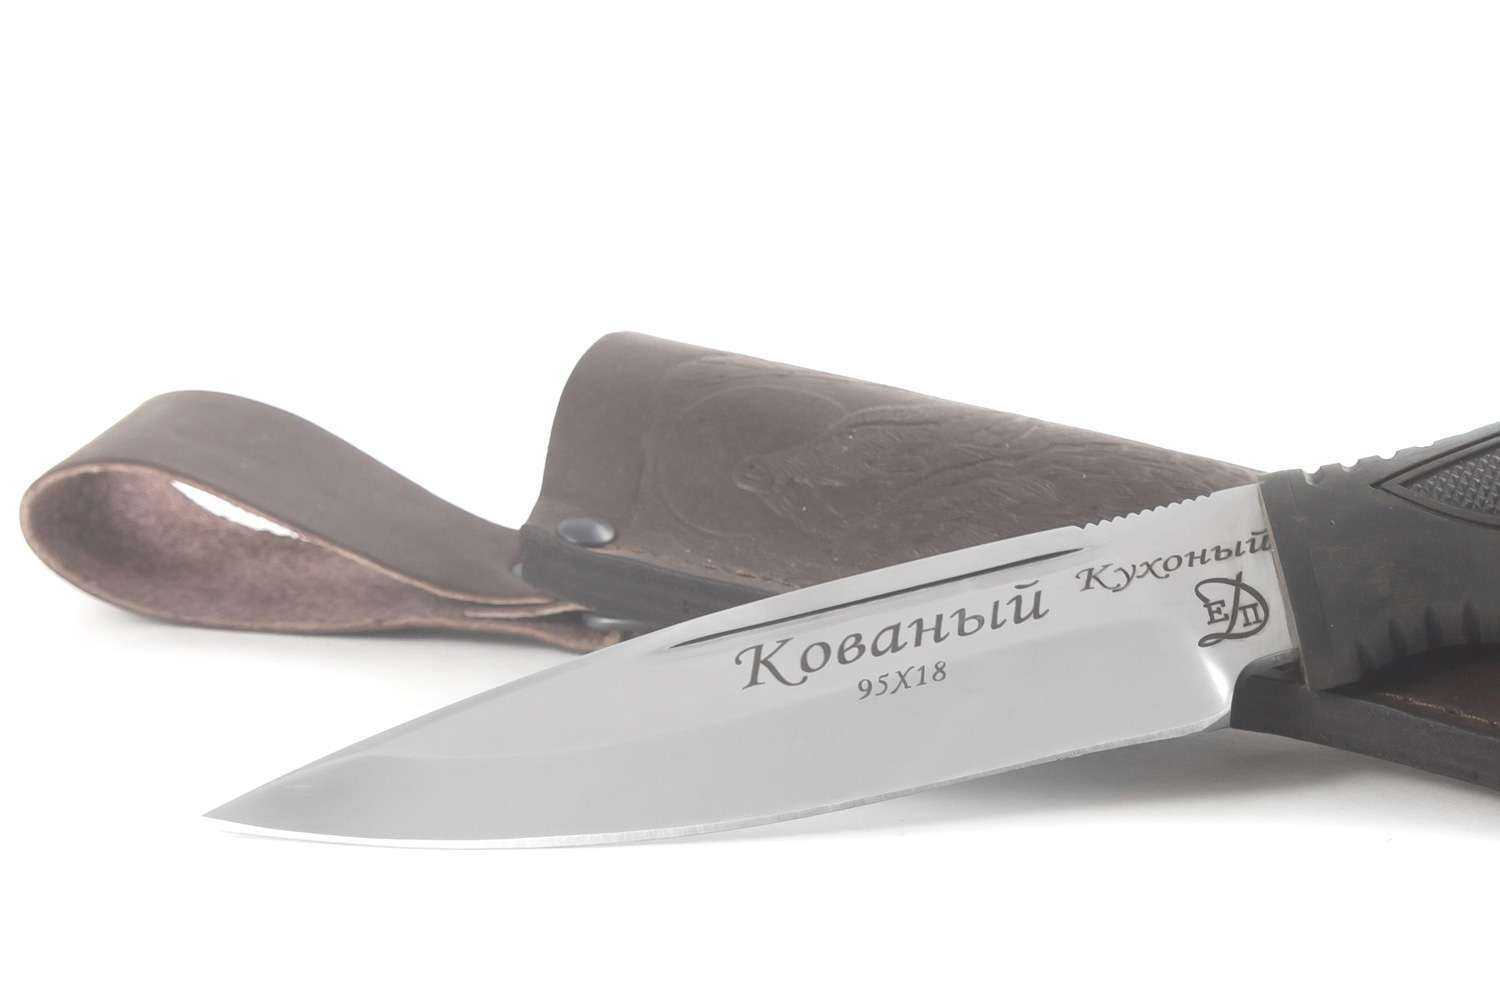 Нож своими руками - подробное описание как сделать простой и прочный самодельный ножик